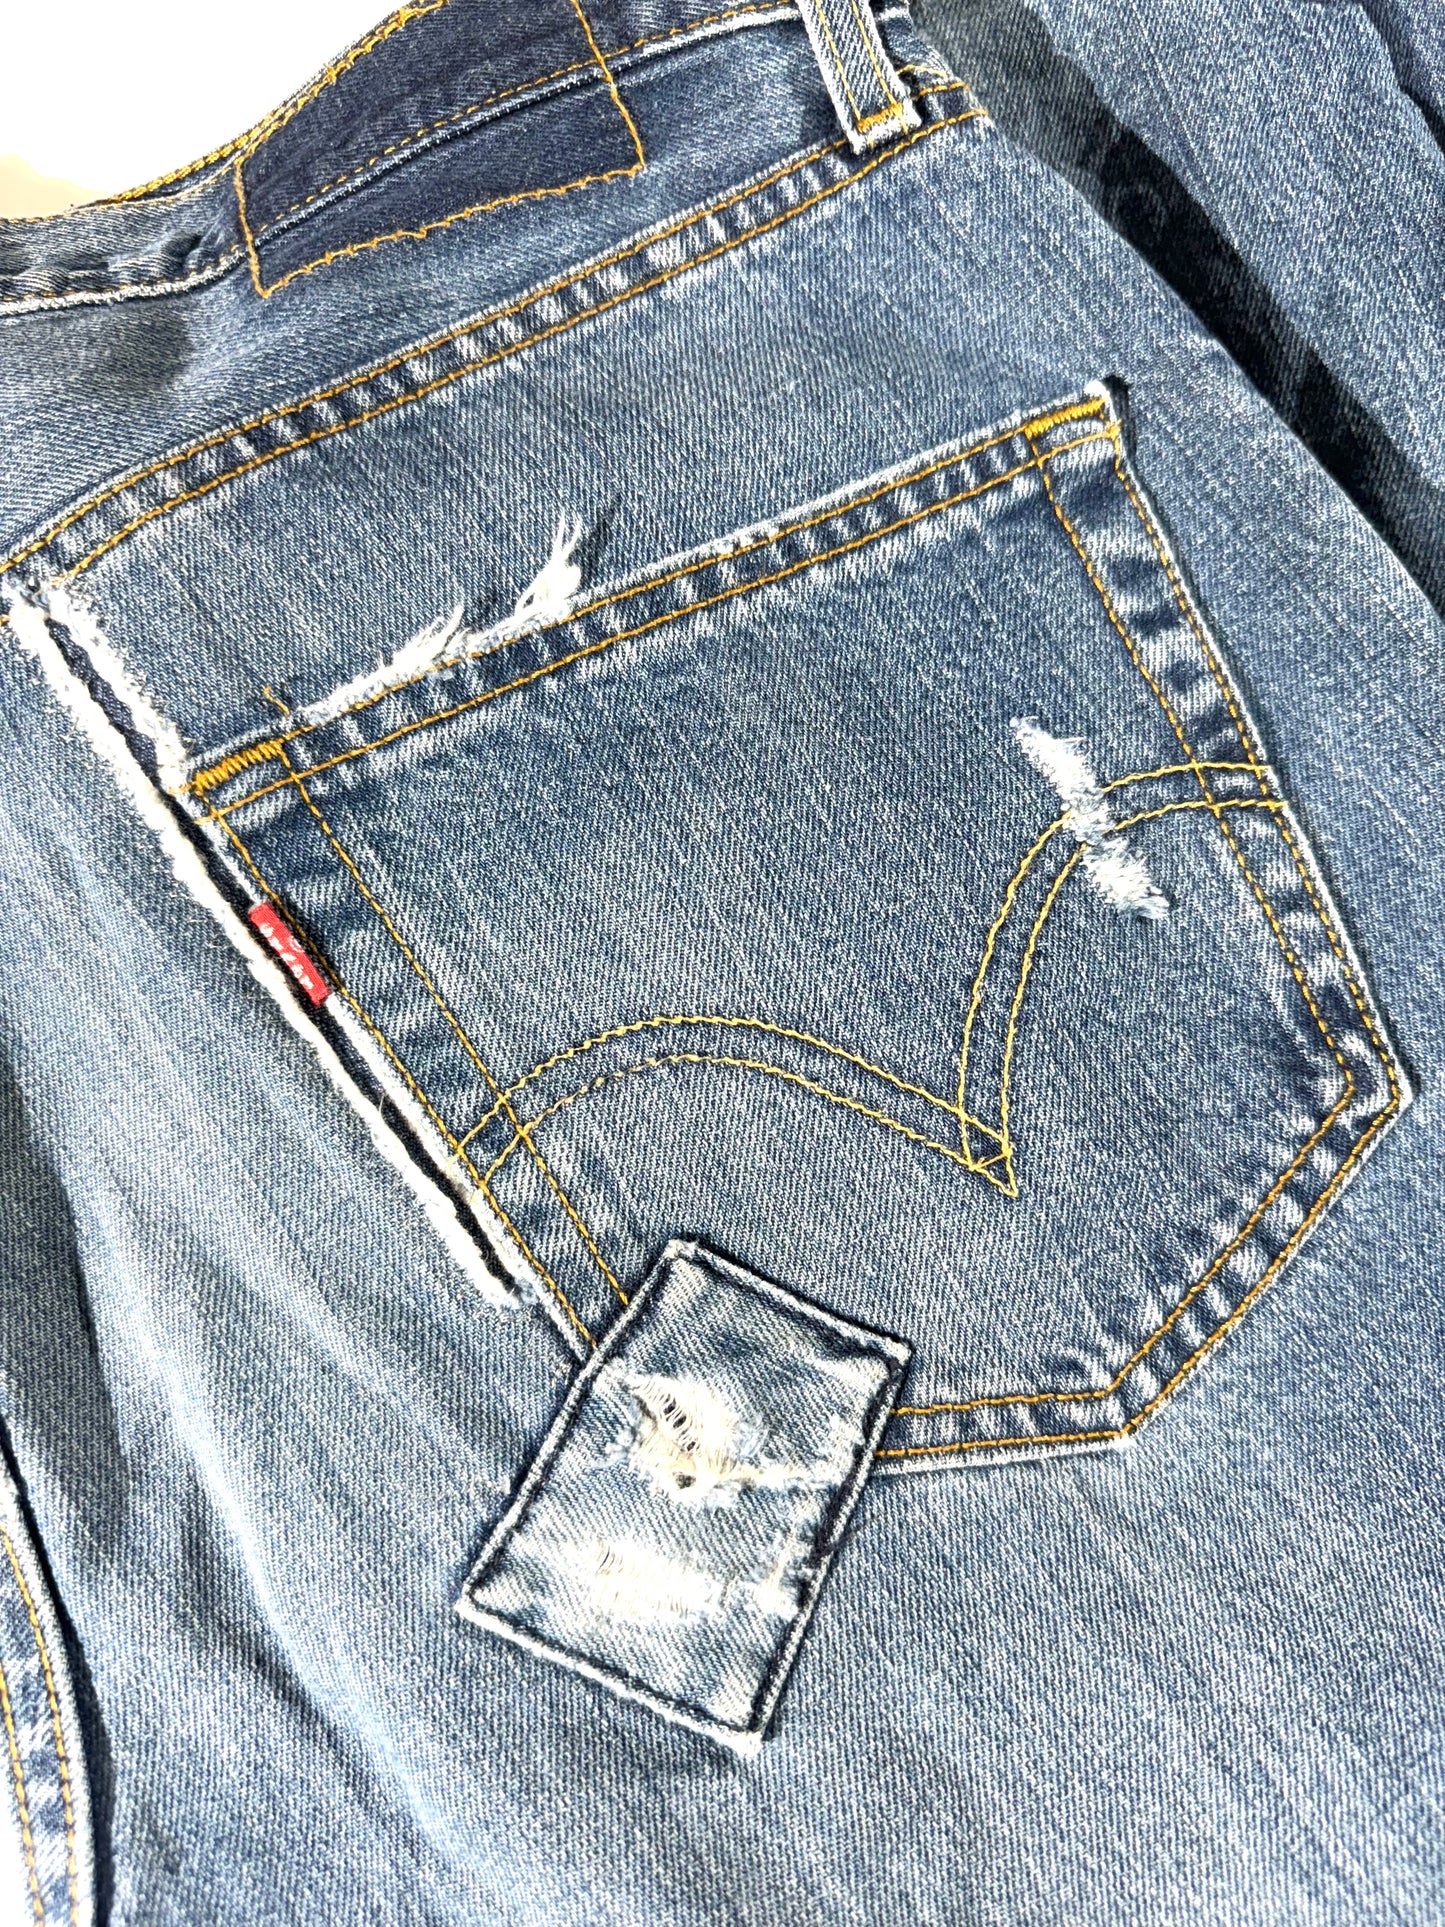 Vintage Patchwork Levis Jeans Bootcut 501 Style Fit